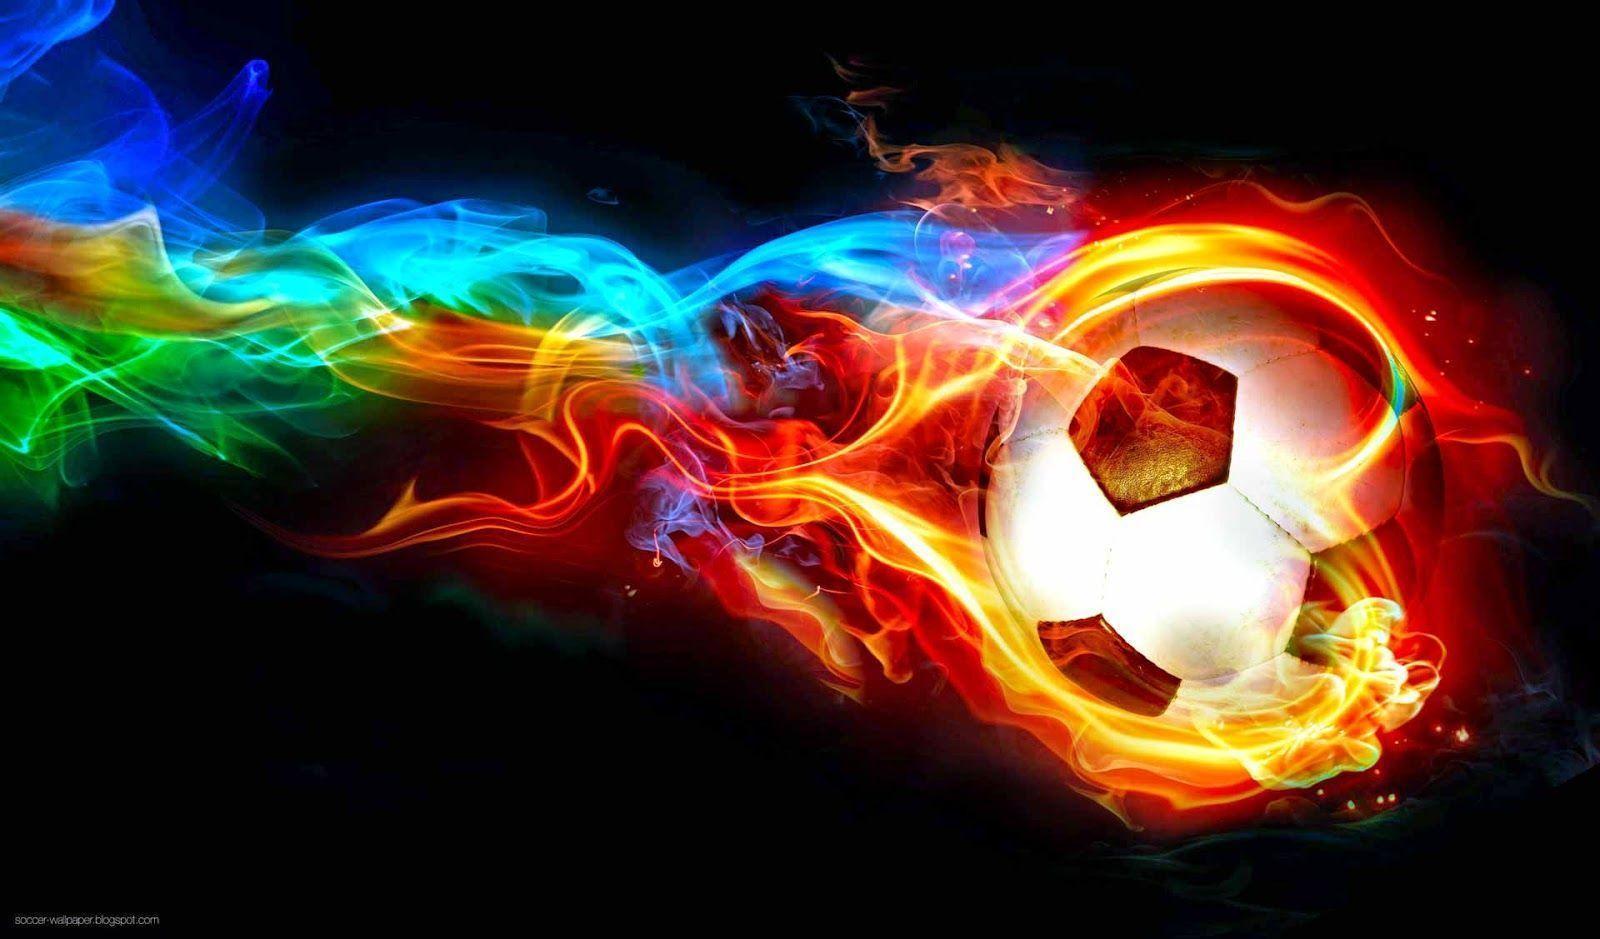 image For > Soccer Ball On Fire Wallpaper